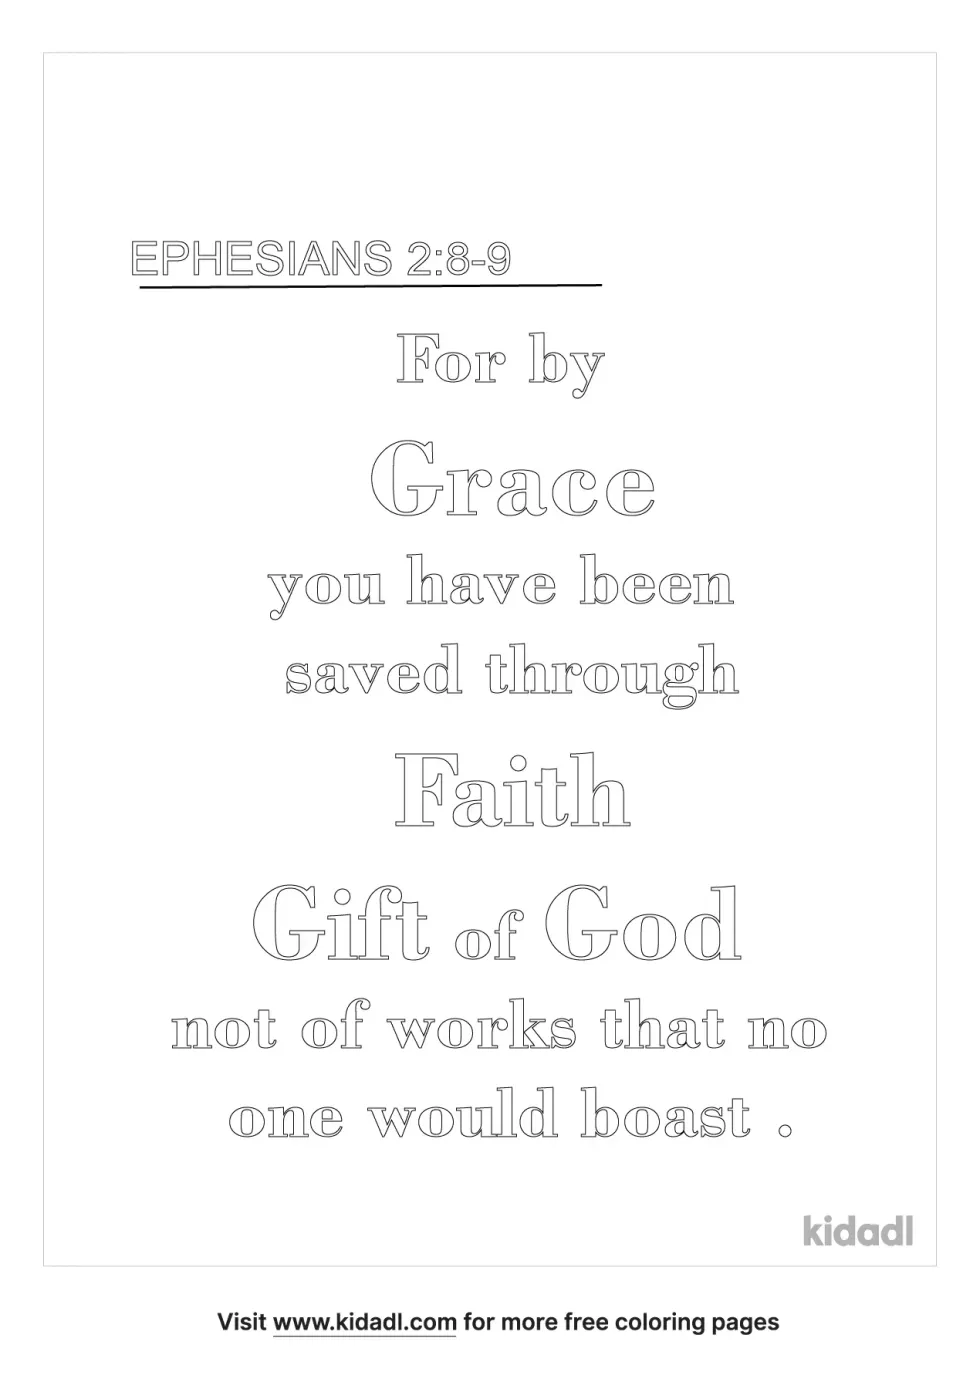 Ephesians 2:8-9